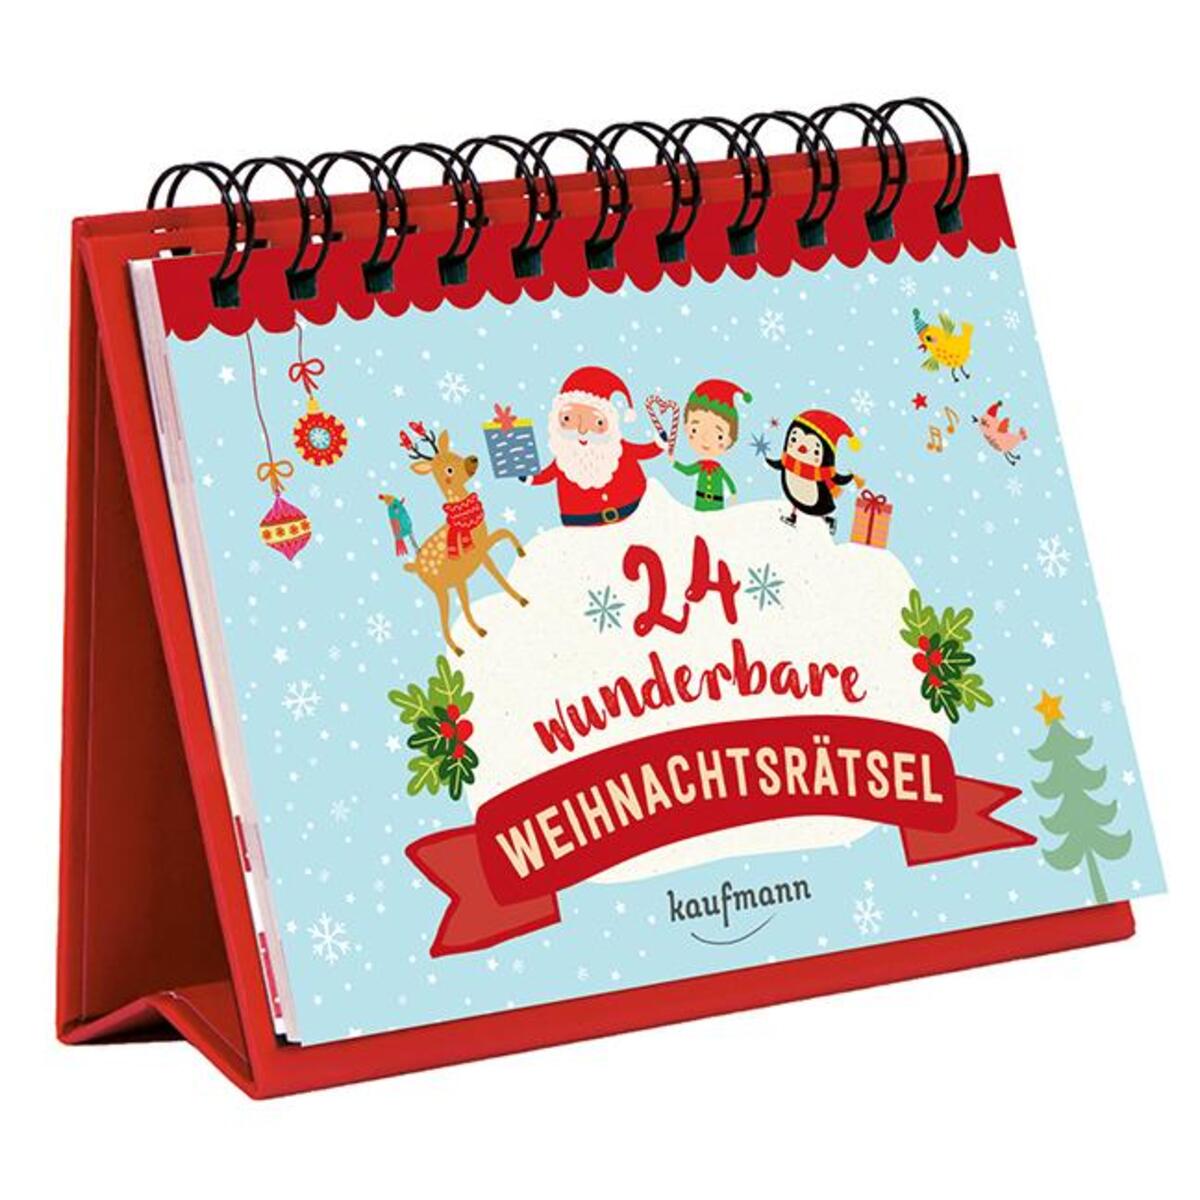 24 wunderbare Weihnachtsrätsel von Kaufmann Ernst Vlg GmbH